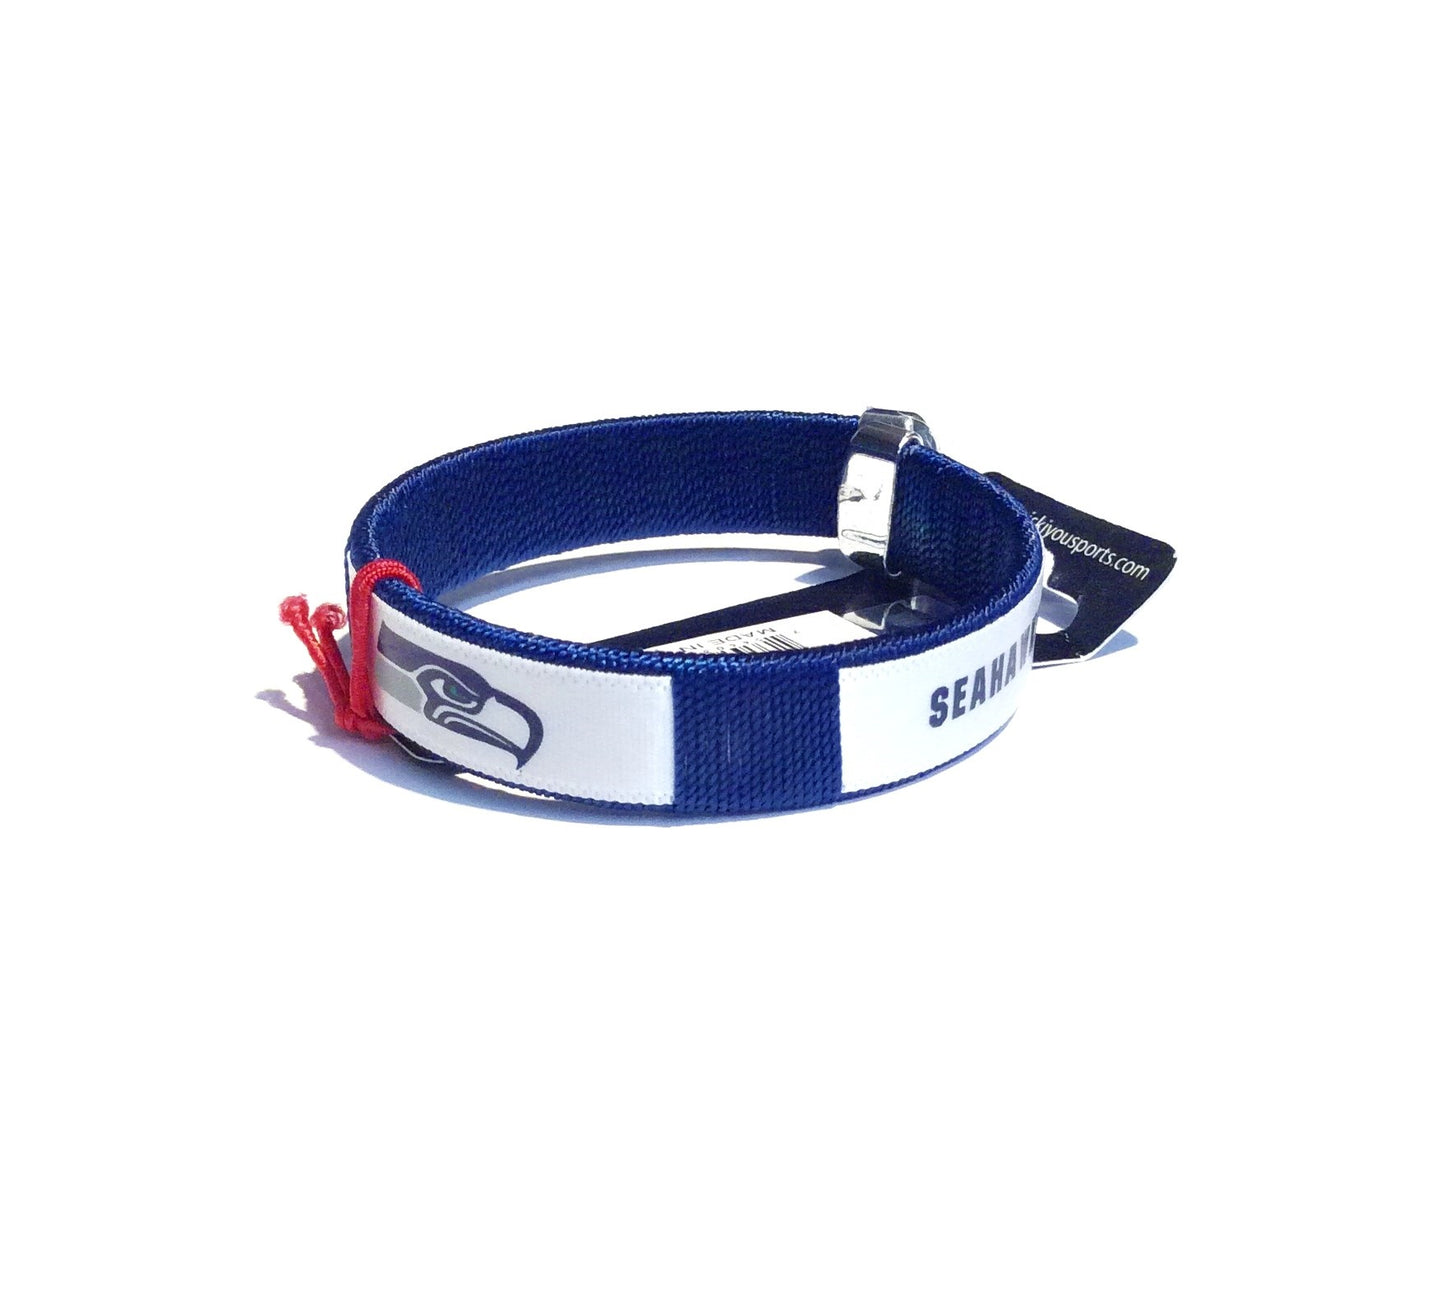 Seahawks Fan Bracelet #35-283031